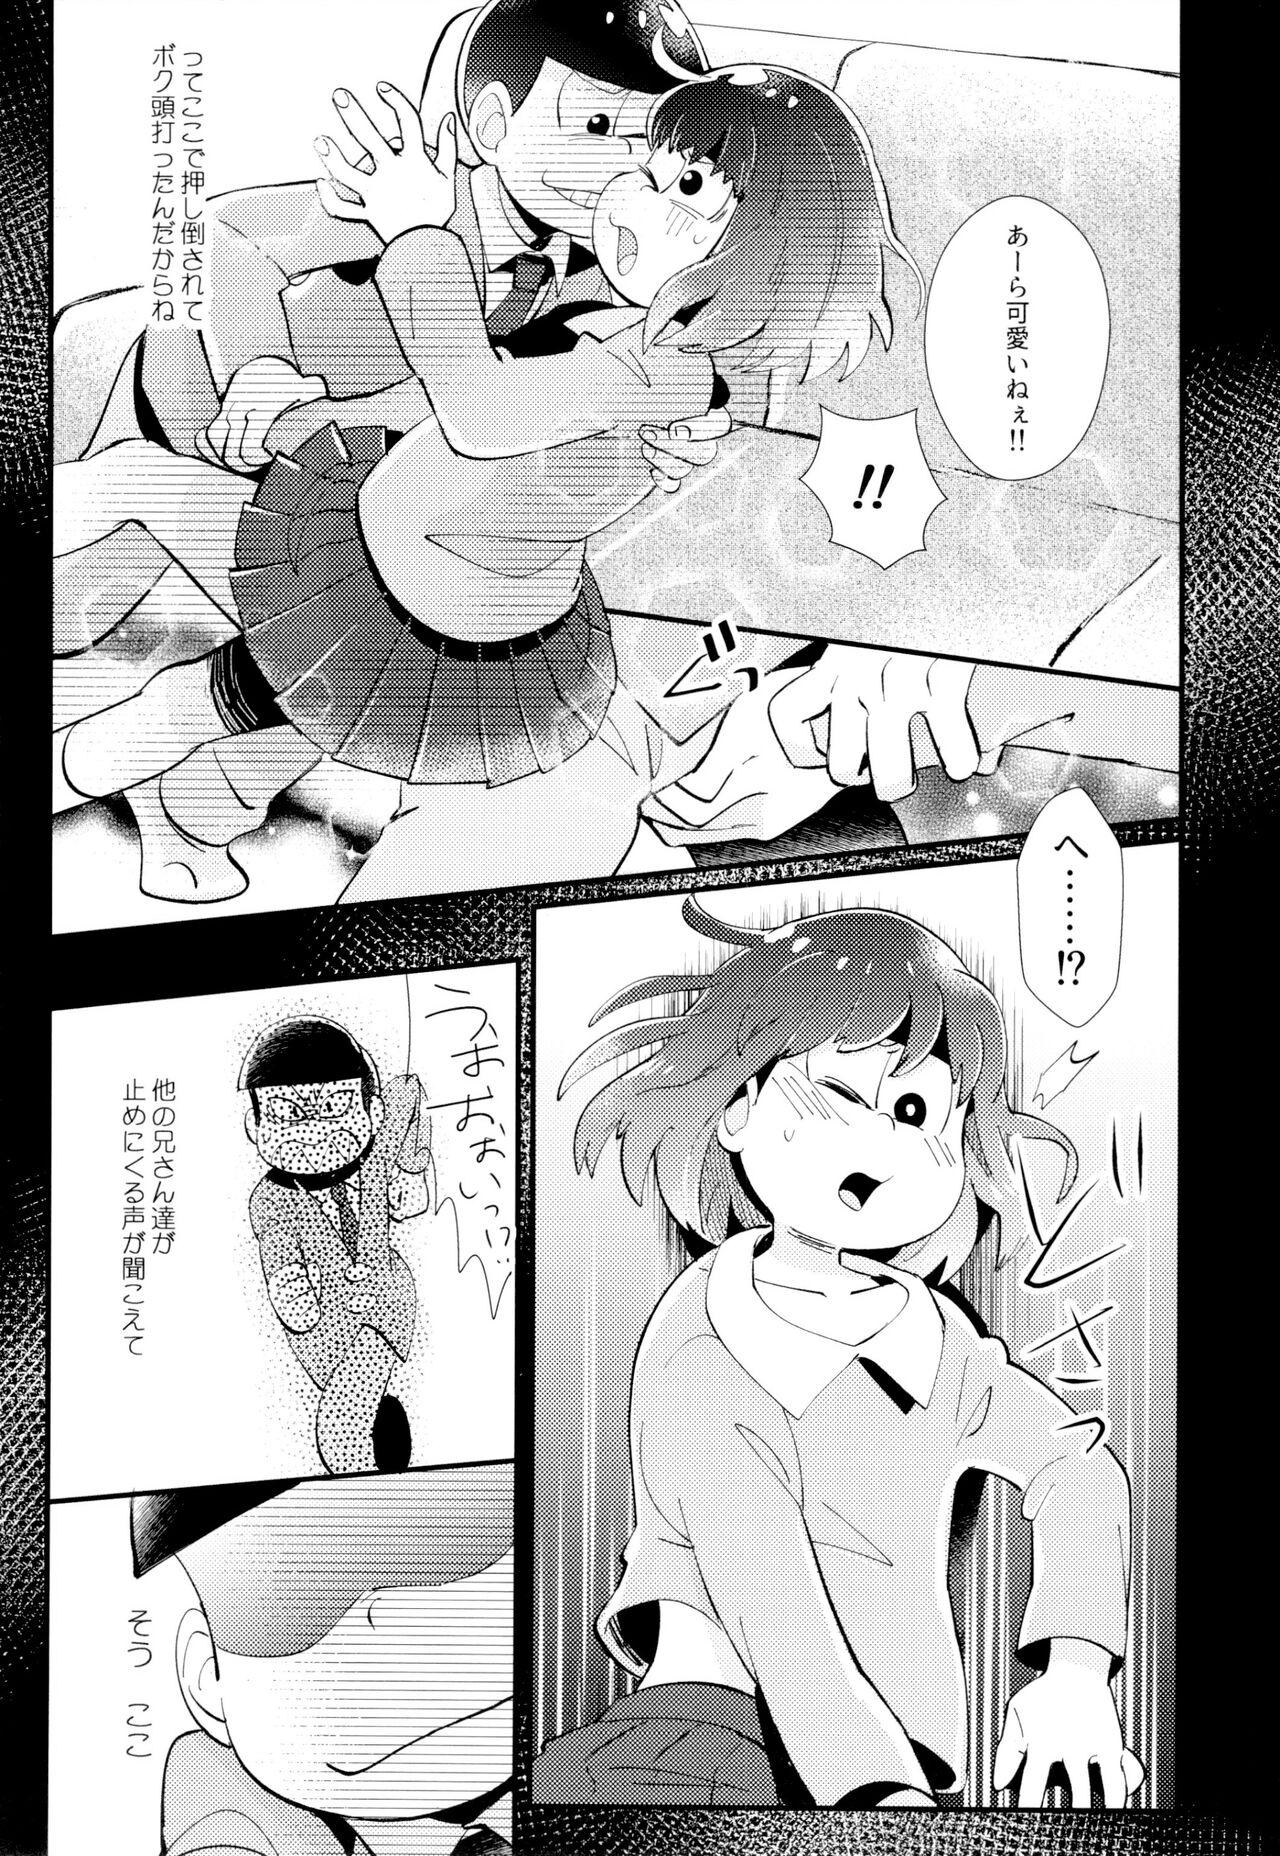 Pene Hajimari wa, yomichi no kaori. - Osomatsu-san Hard Fuck - Page 11